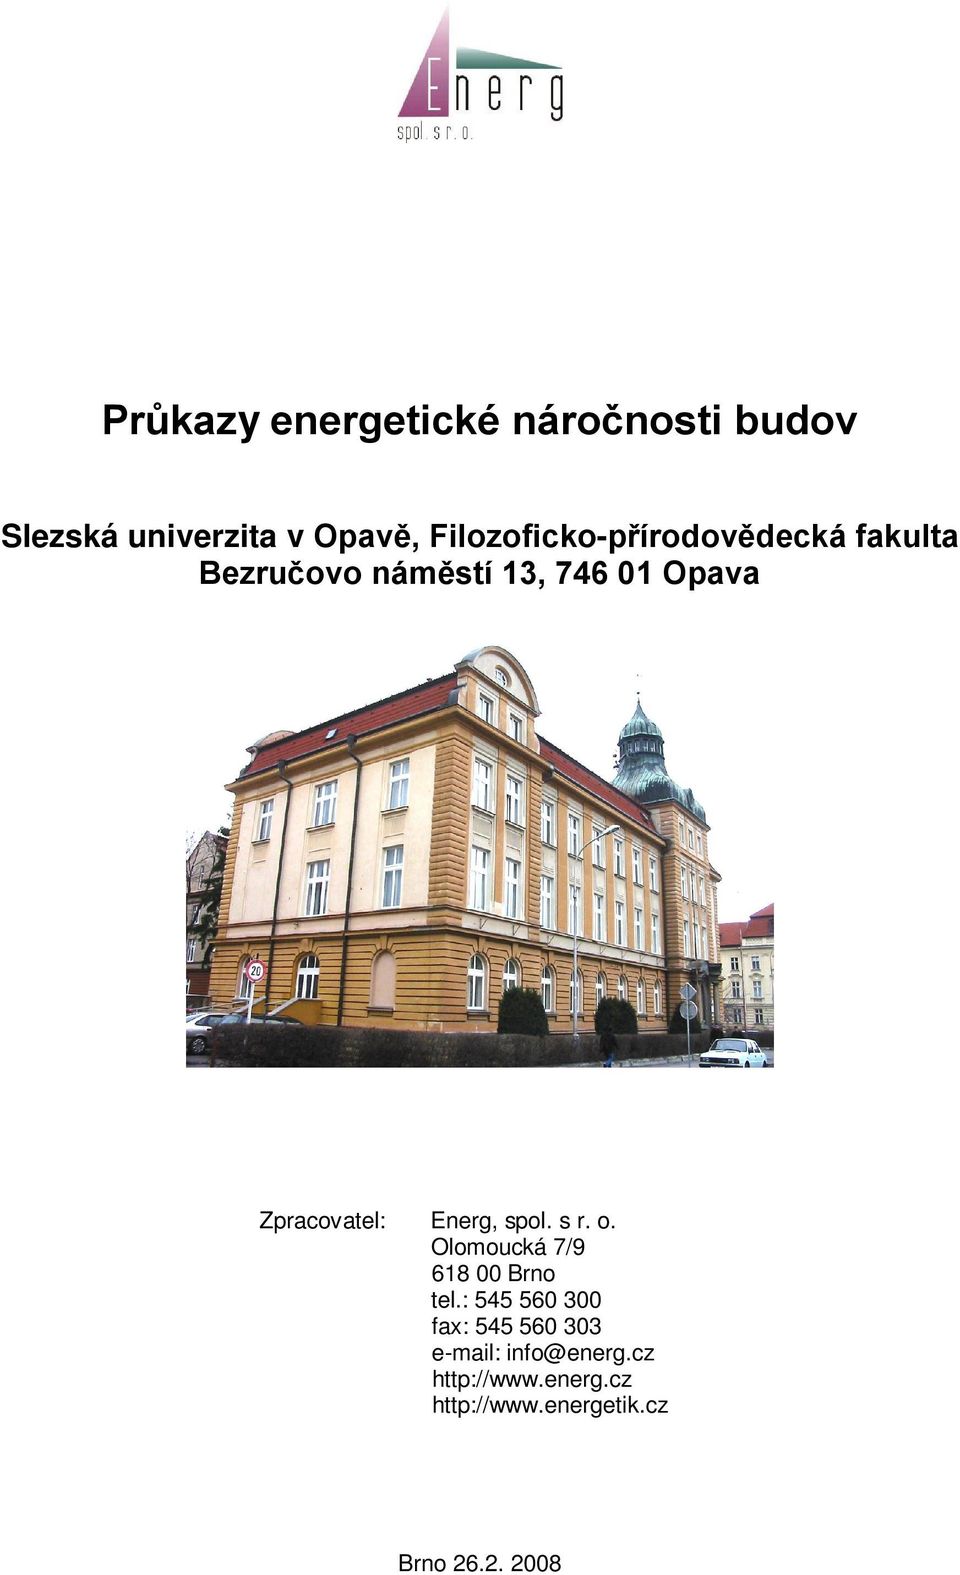 Zpracovatel: Energ, spol. s r. o. Olomoucká 7/9 618 00 Brno tel.